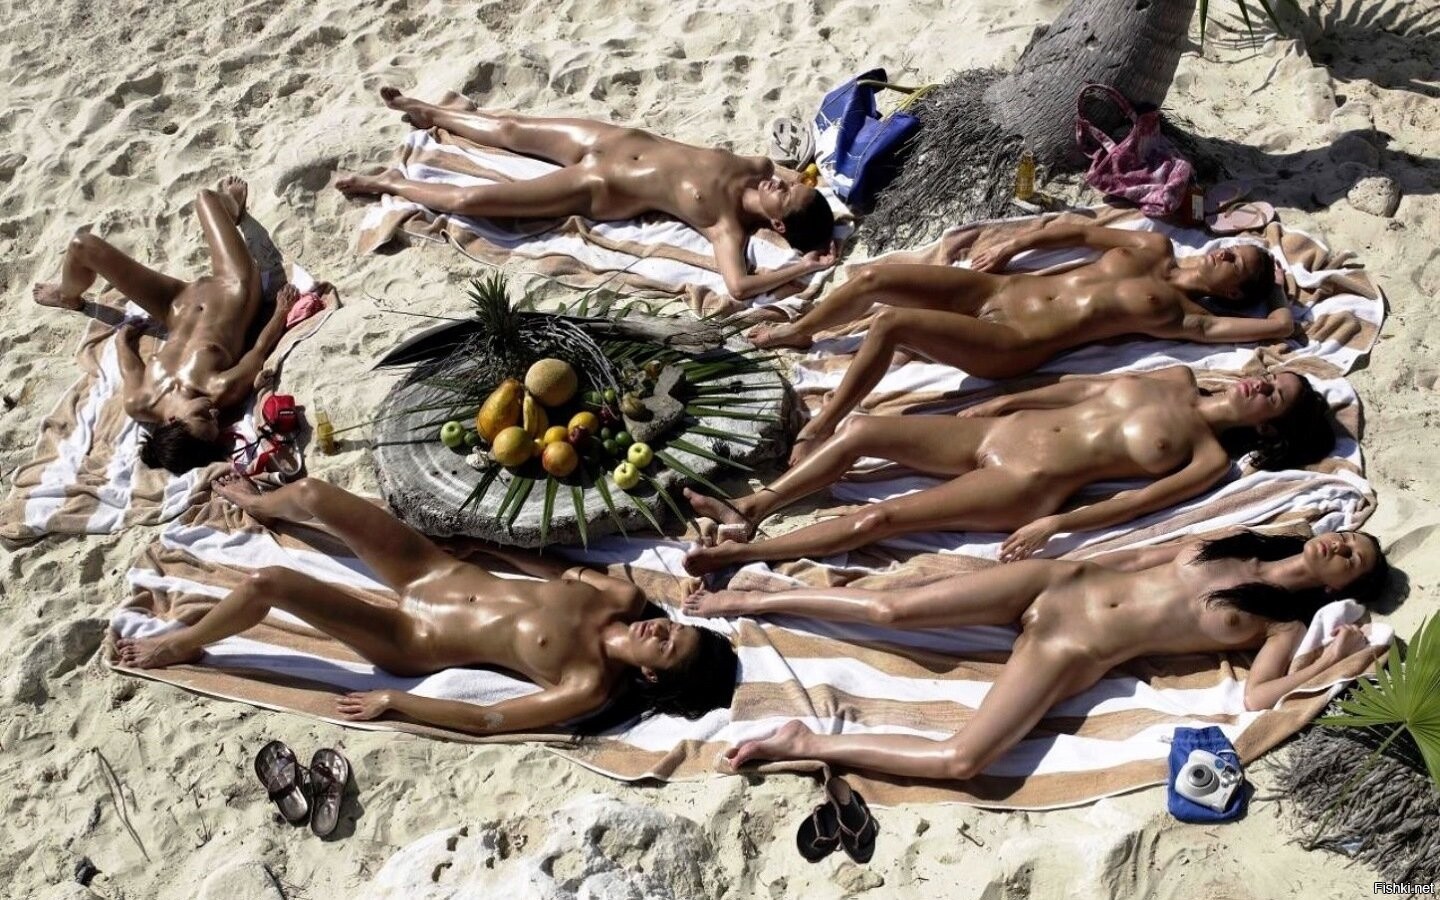 Бразильский Нудистский Пляж - Нудизм И Натуризм